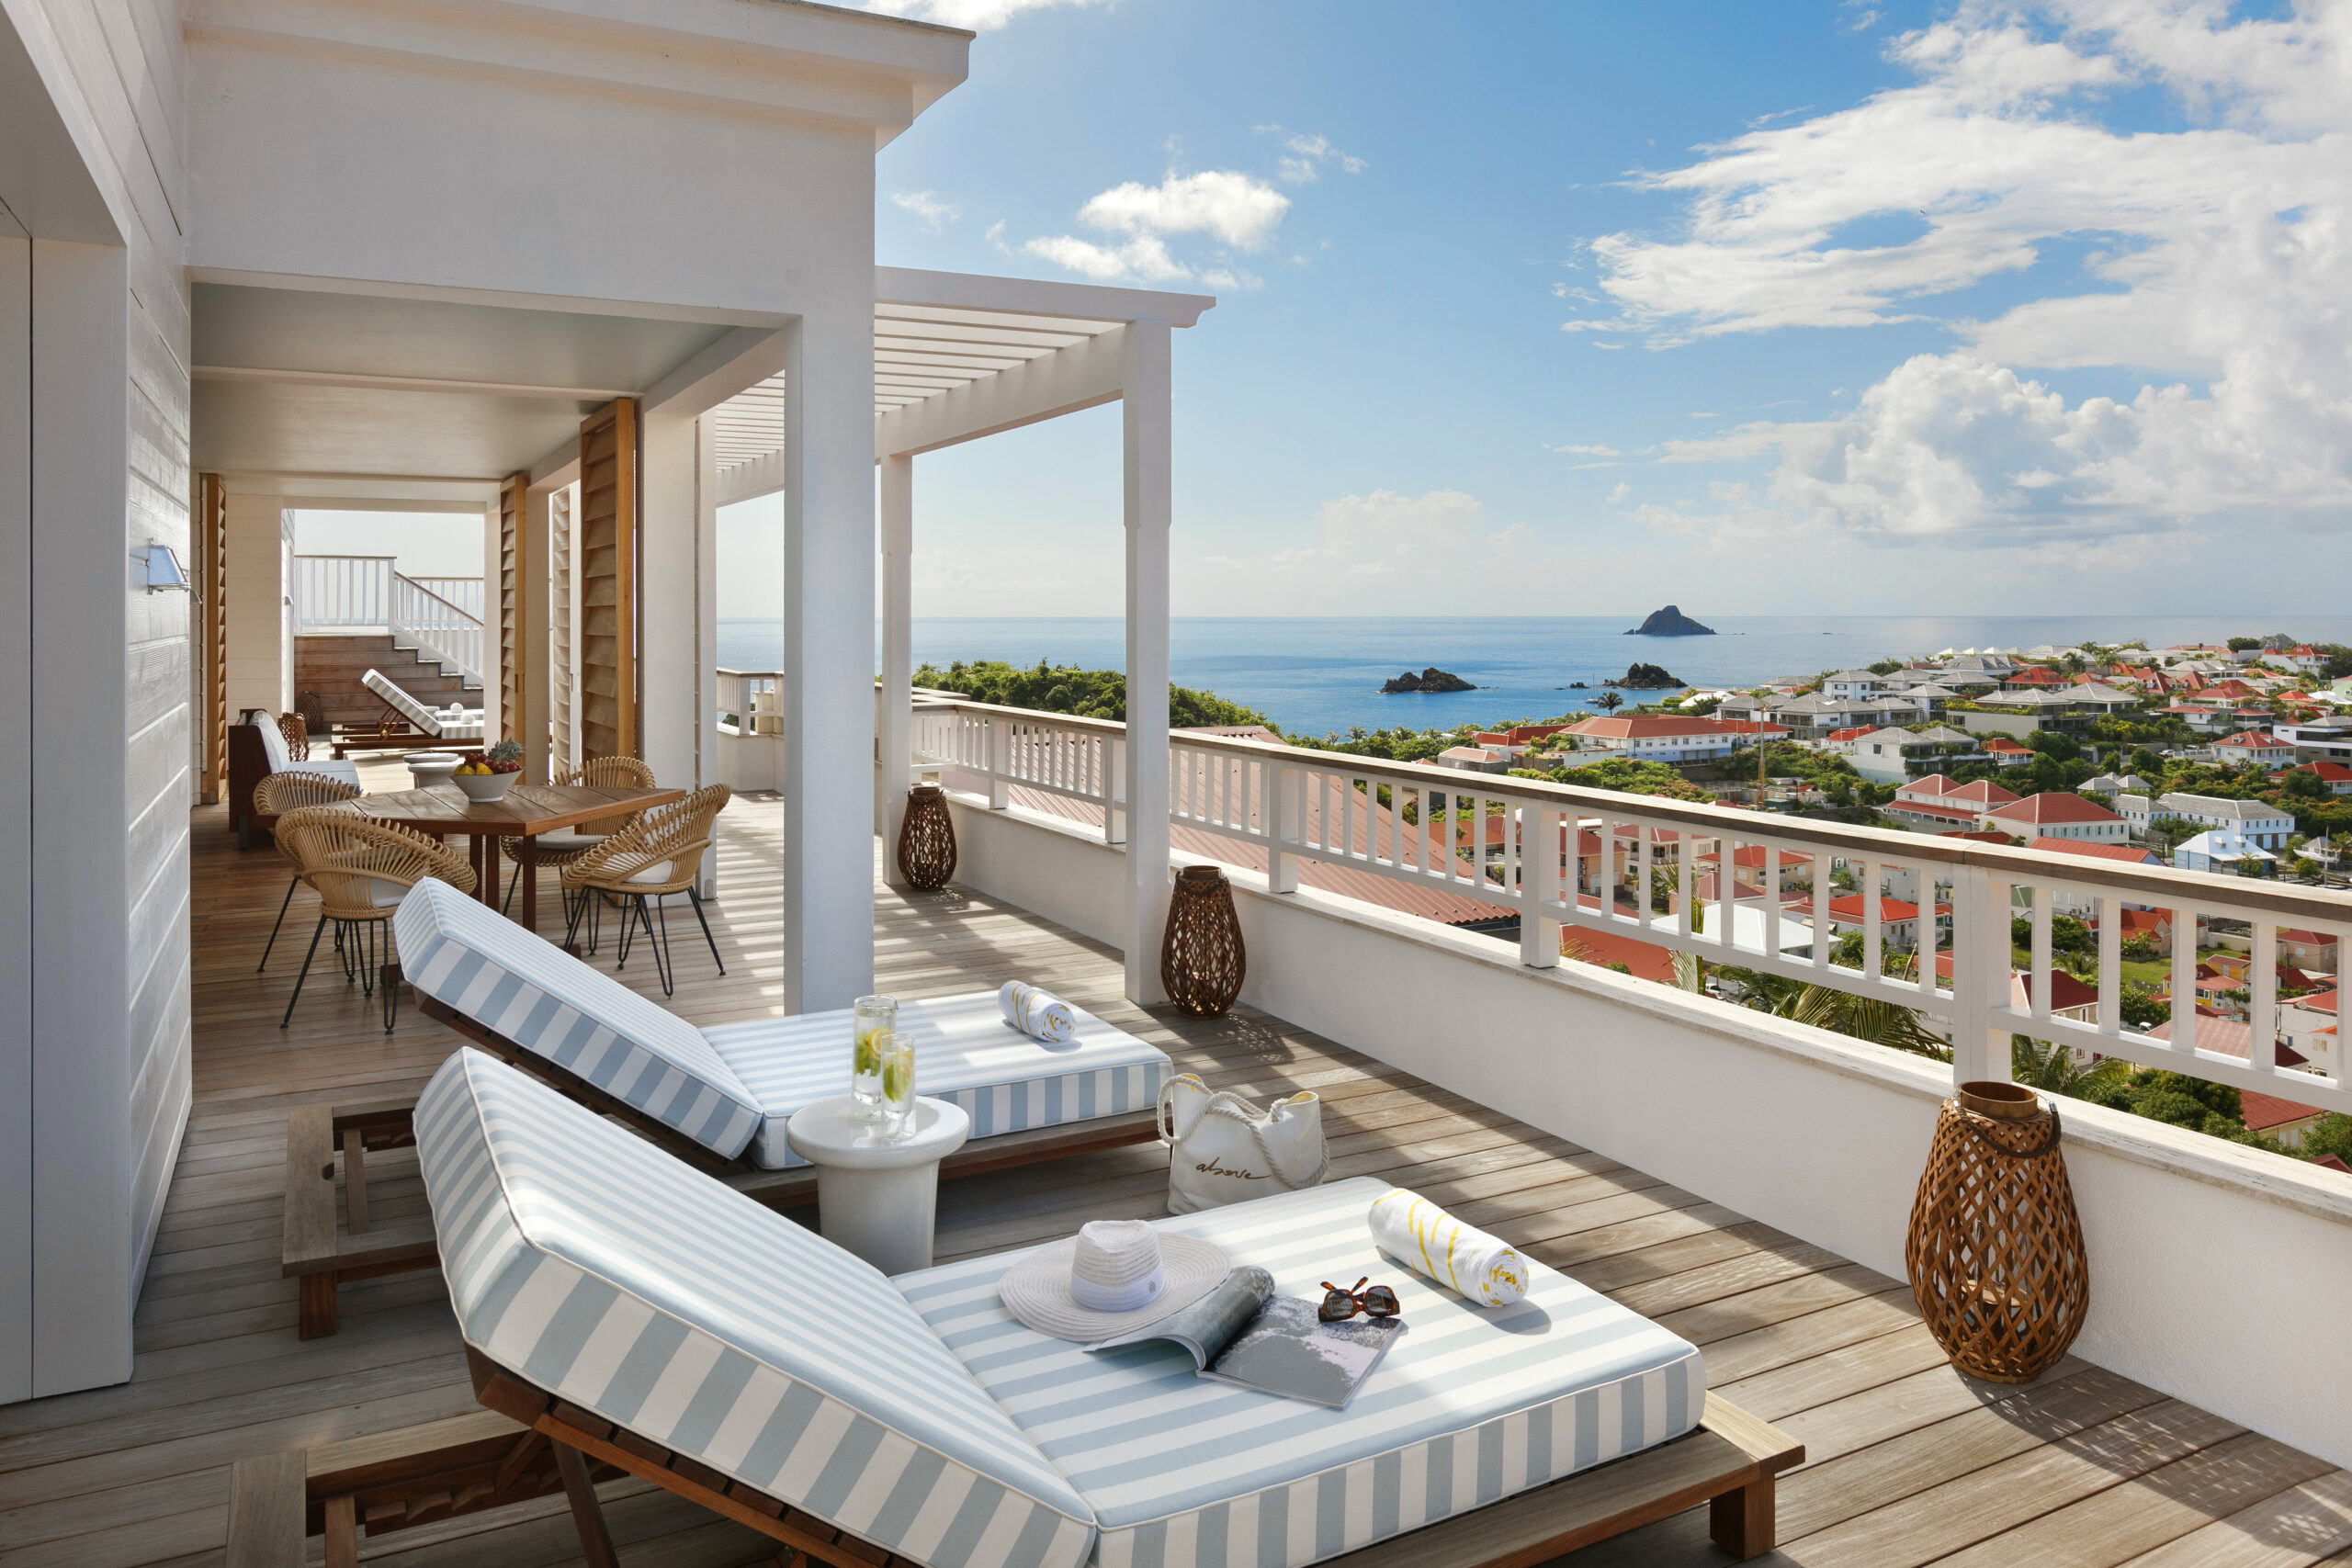 Une terrasse avec de confortables chaises longues et une vue sur la mer turquoise